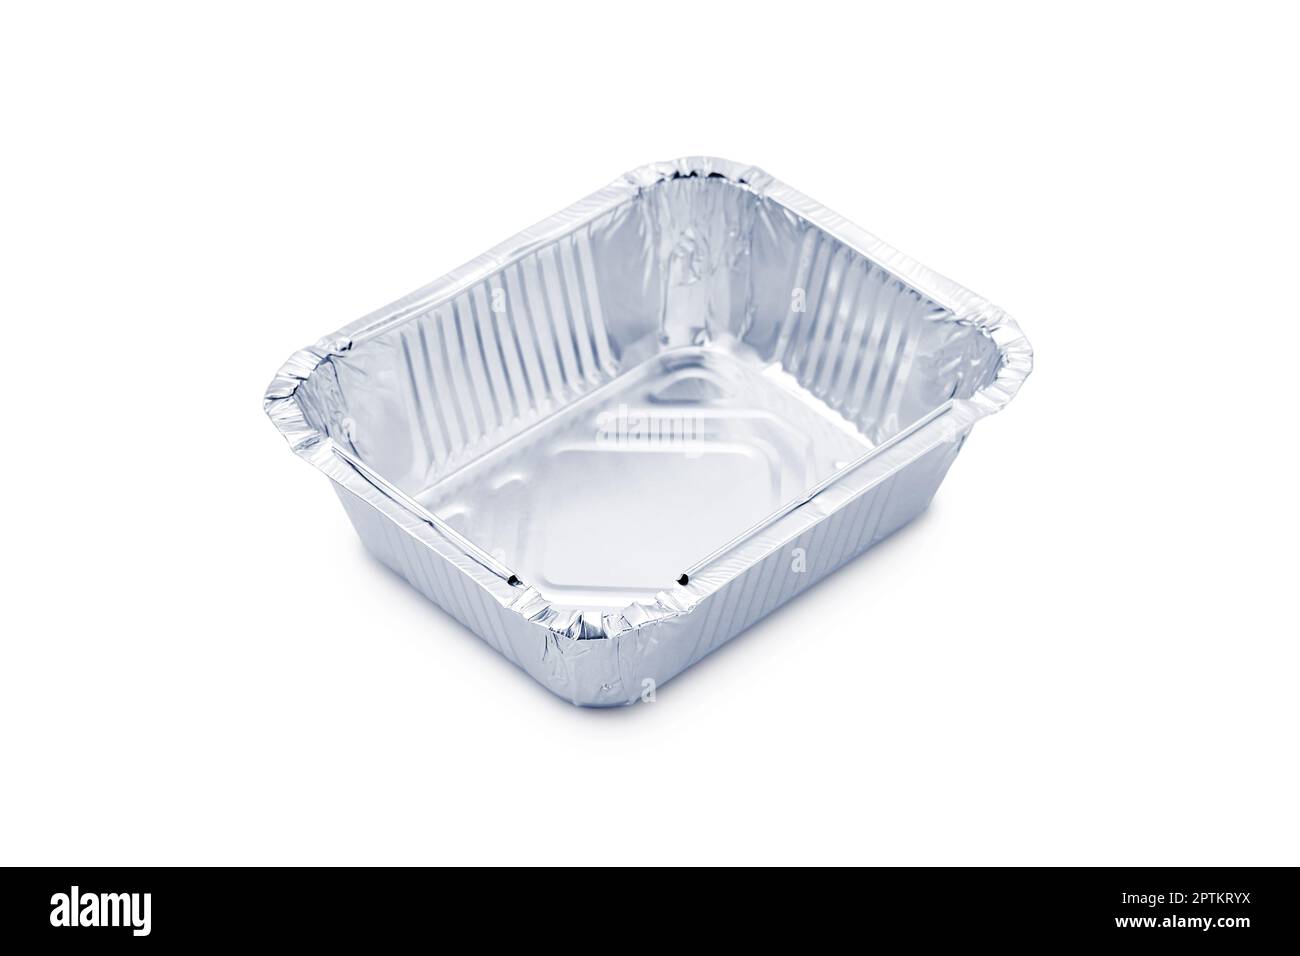 https://c8.alamy.com/compes/2ptkryx/contenedor-de-aluminio-para-comida-caliente-para-llevar-aislado-en-blanco-2ptkryx.jpg